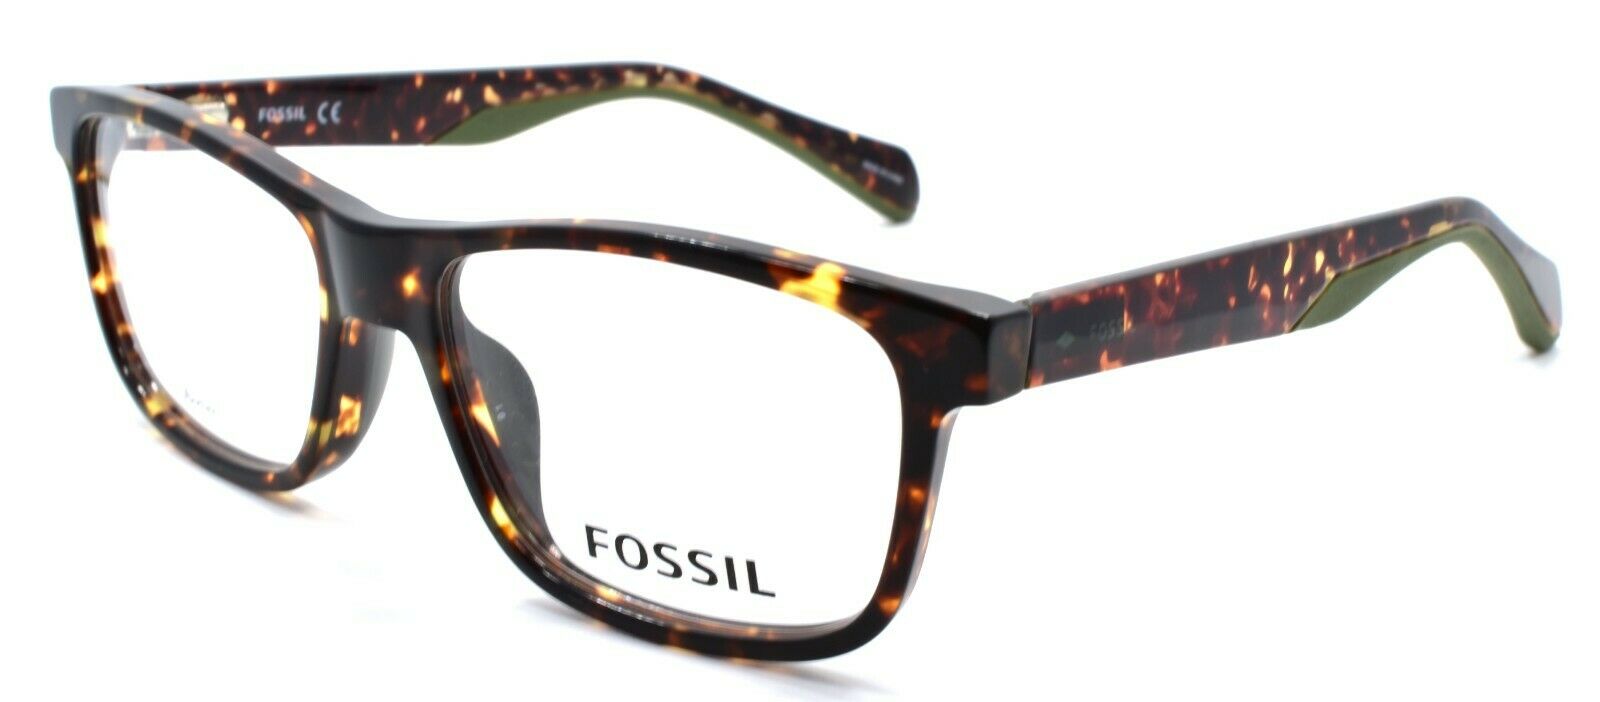 1-Fossil FOS 7046 086 Men's Eyeglasses Frames 52-16-145 Dark Havana-716736131139-IKSpecs